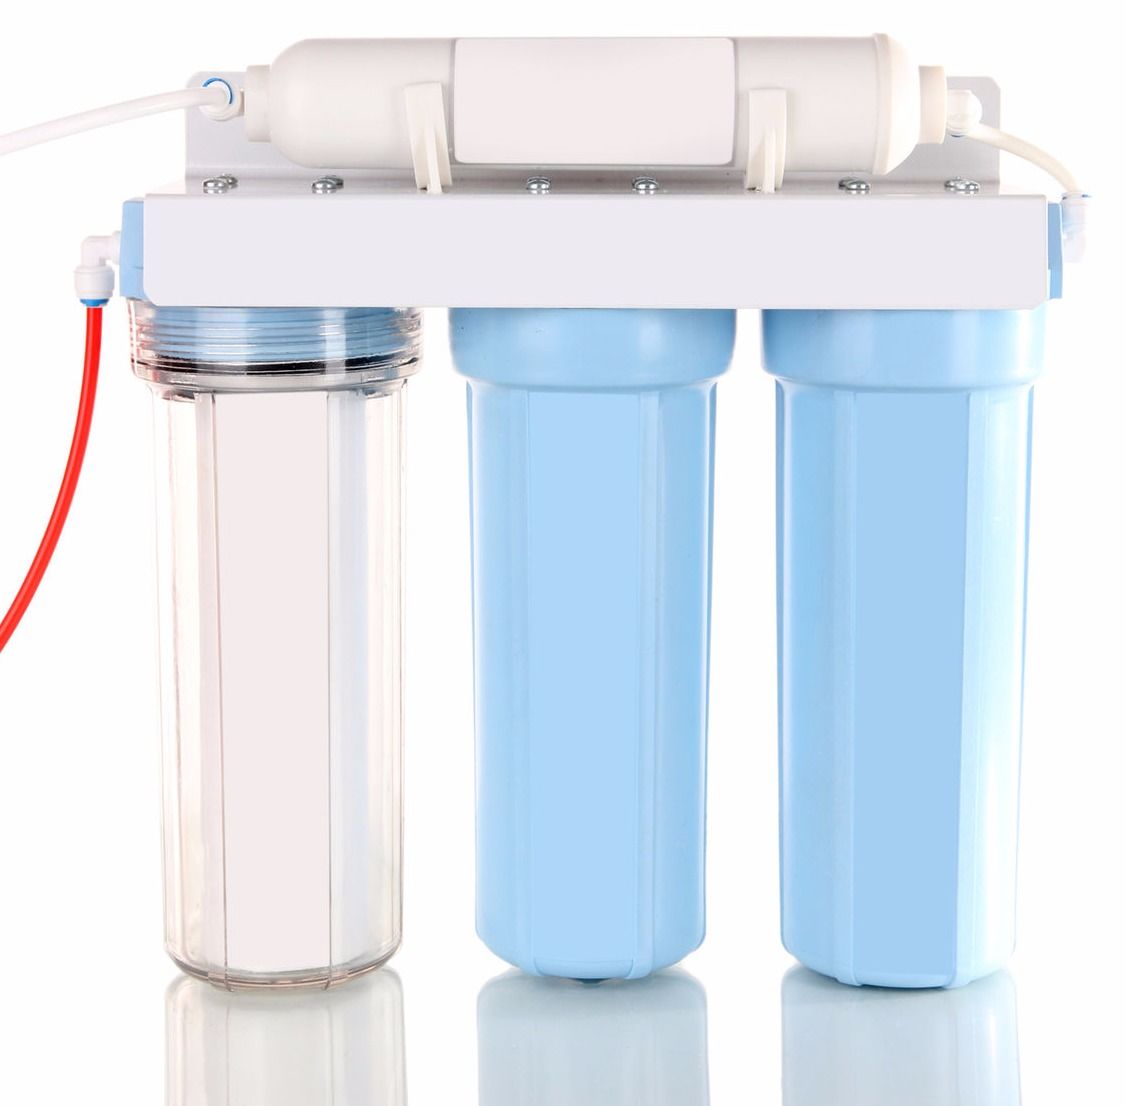 Проточный фильтр для воды. Фильтр для воды с индикатором загрязненности. Фильтр очистки жесткости воды